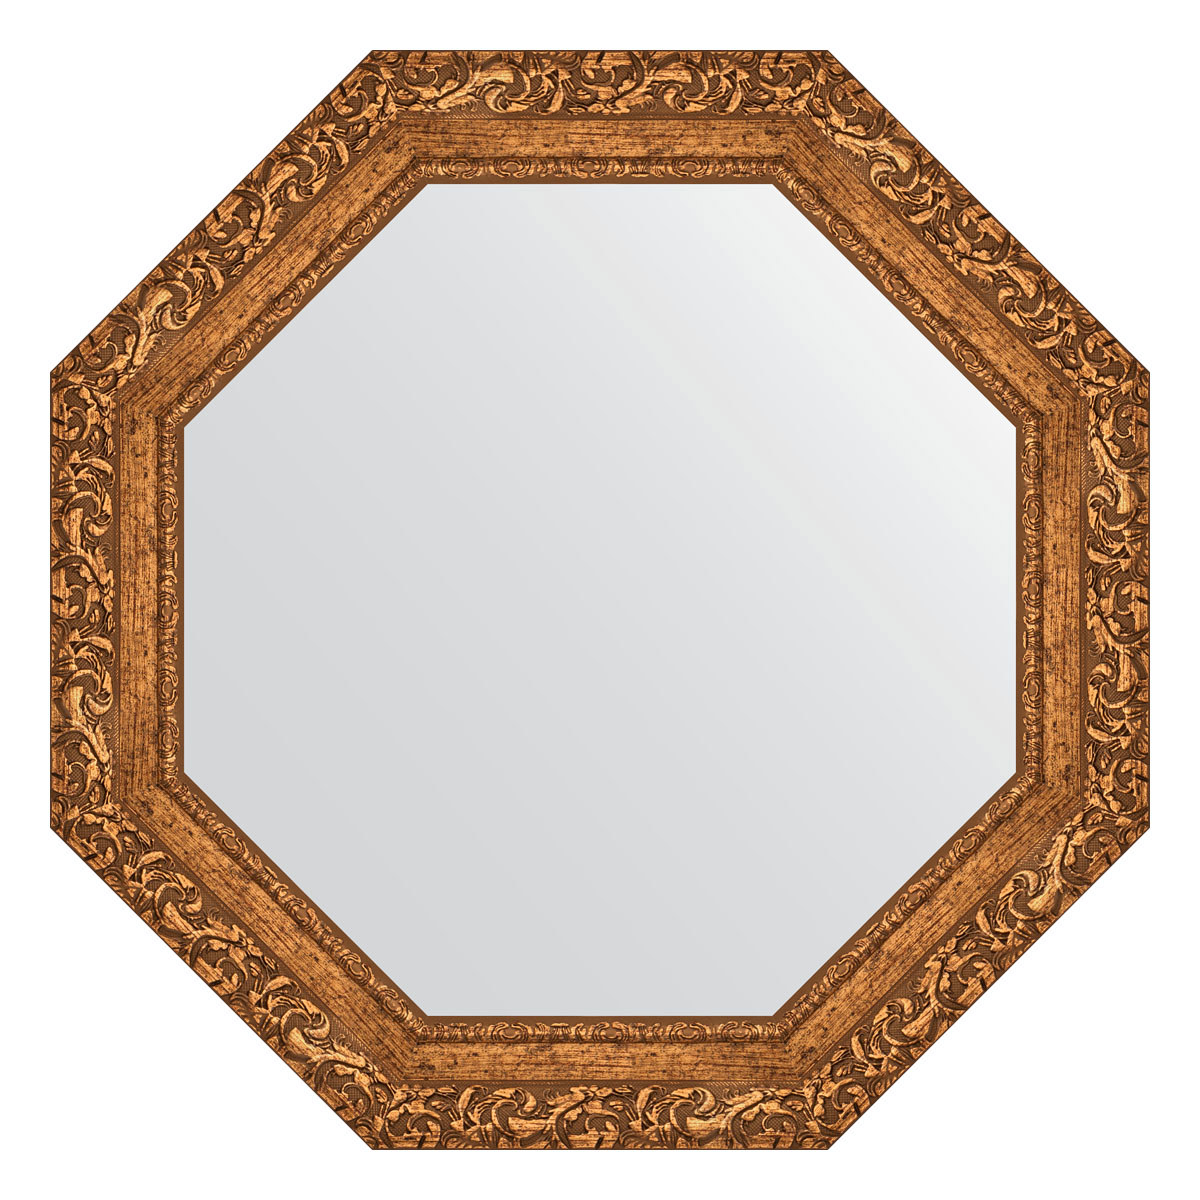 90313932 Зеркало в багетной раме виньетка бронзовая 85 мм 70x70 см BY 7333 OCTAGON STLM-0180826 EVOFORM